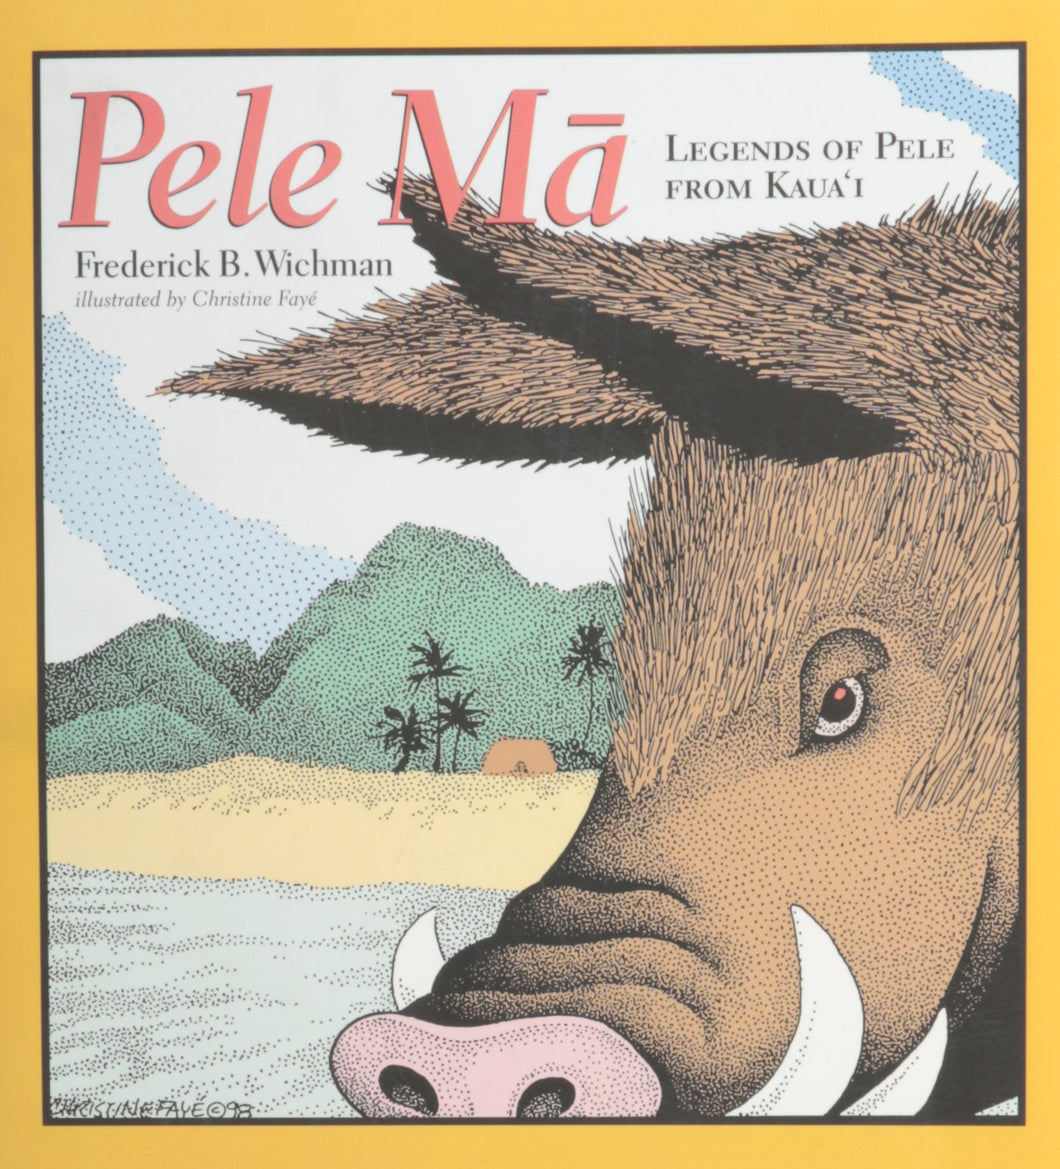 Pele Ma: Legends of Pele from Kaua'i by Frederick B. Wichman